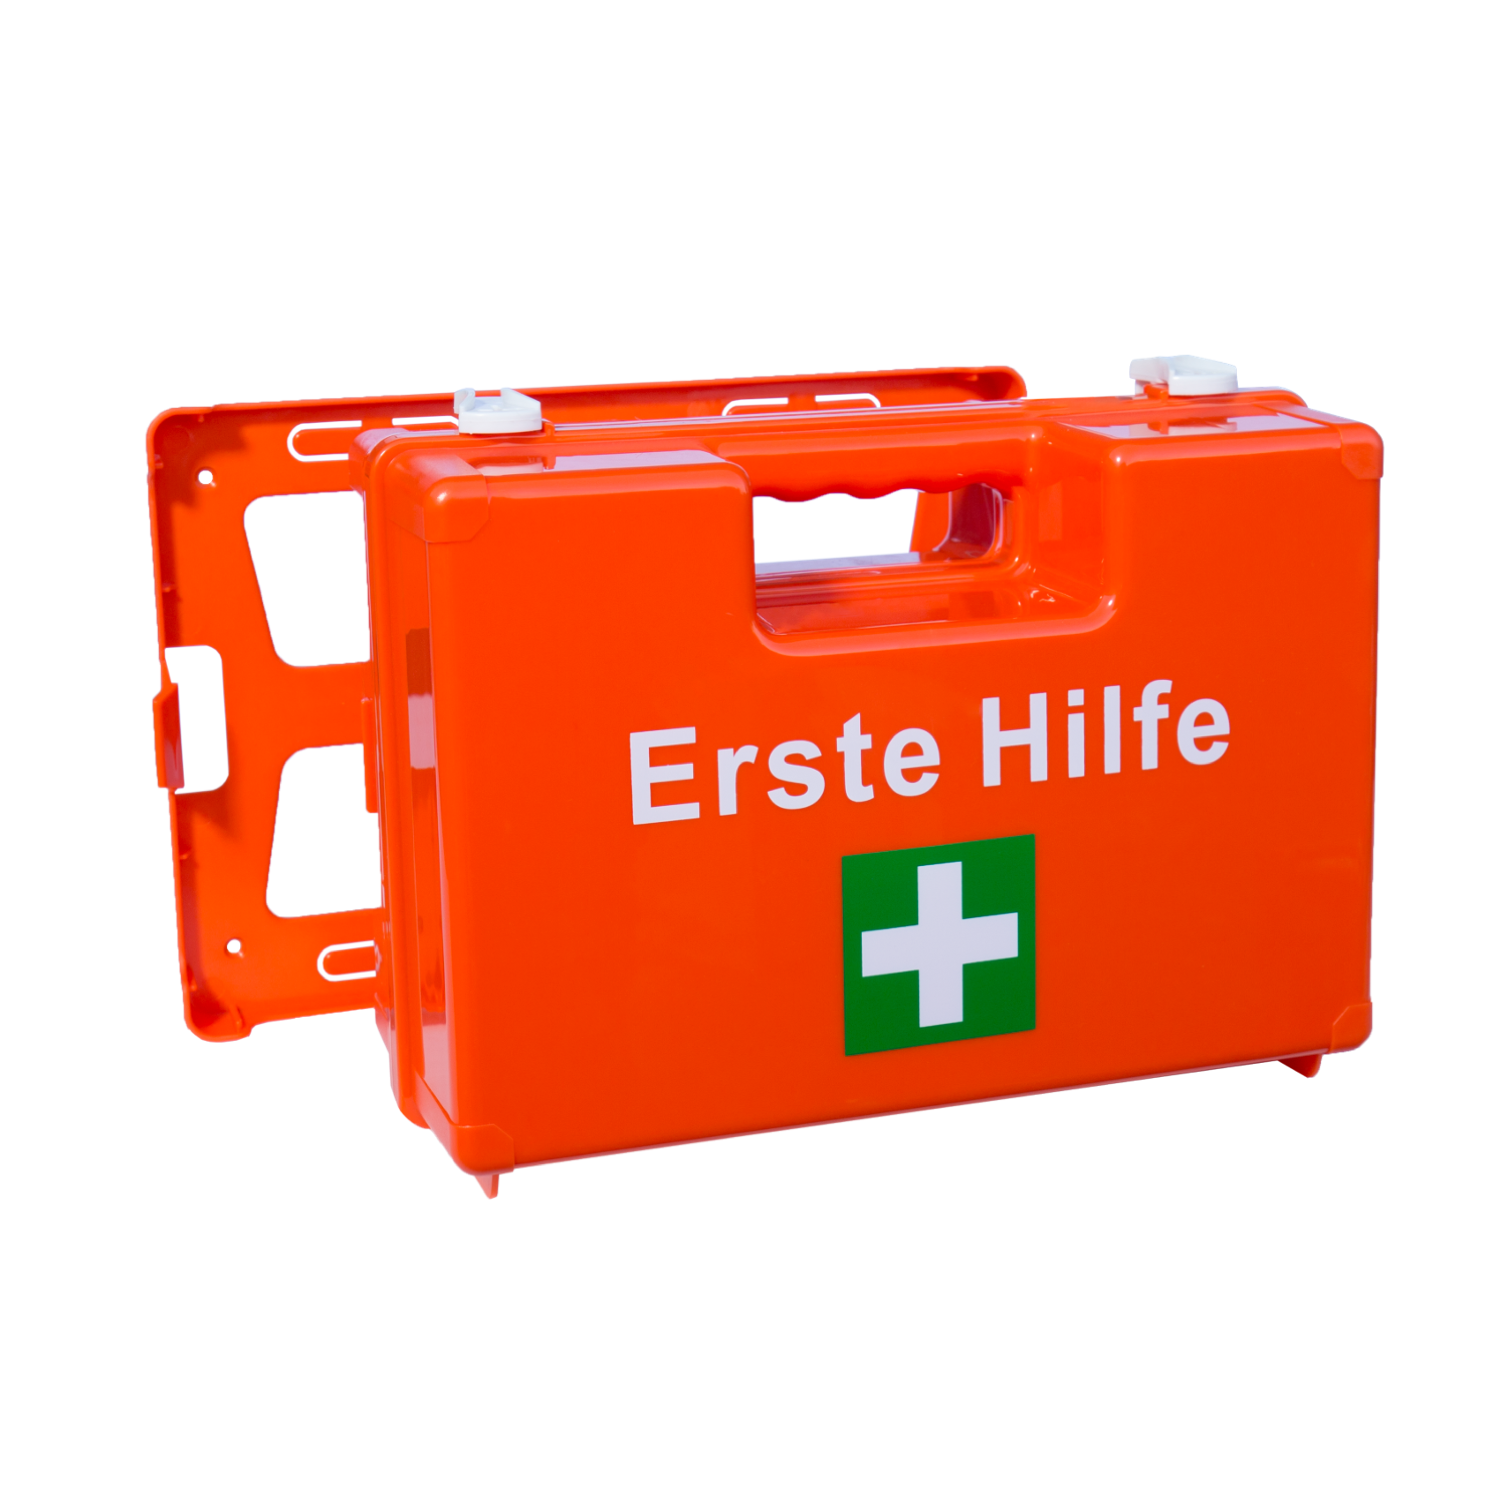 Erste-Hilfe-Koffer kaufen, Verbandkasten nach Norm